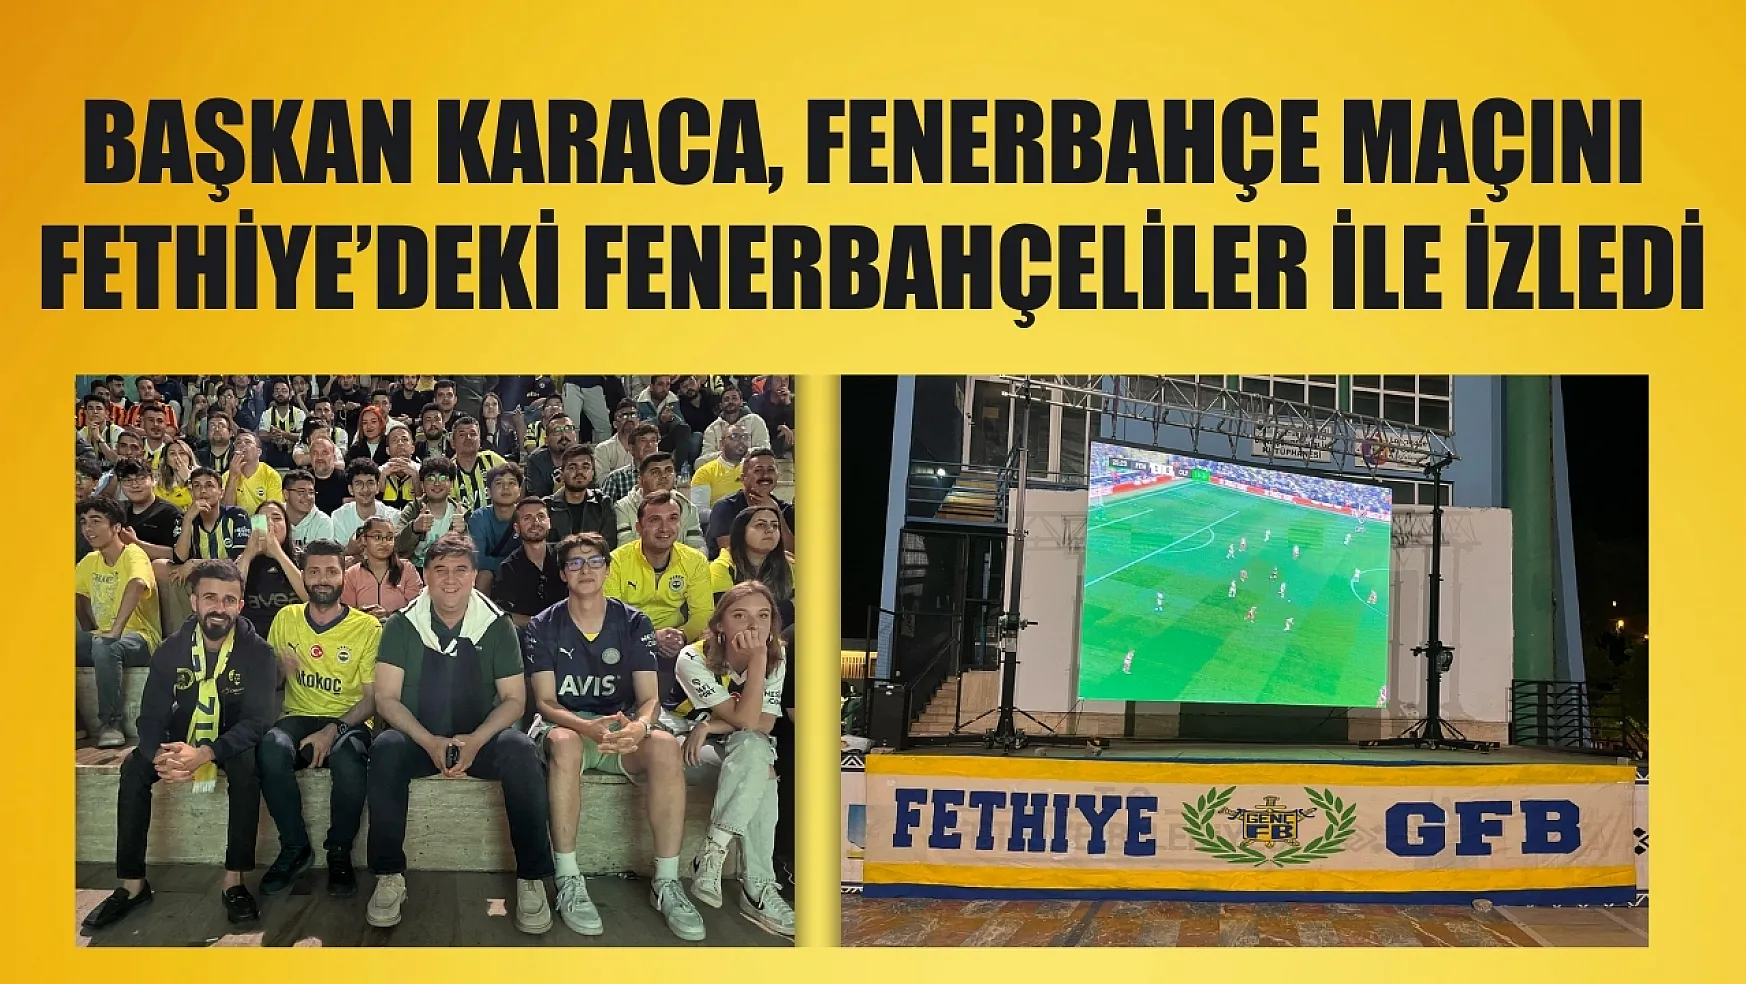 Başkan Karaca, Fenerbahçe maçını Fethiye'deki Fenerbahçeliler ile izledi